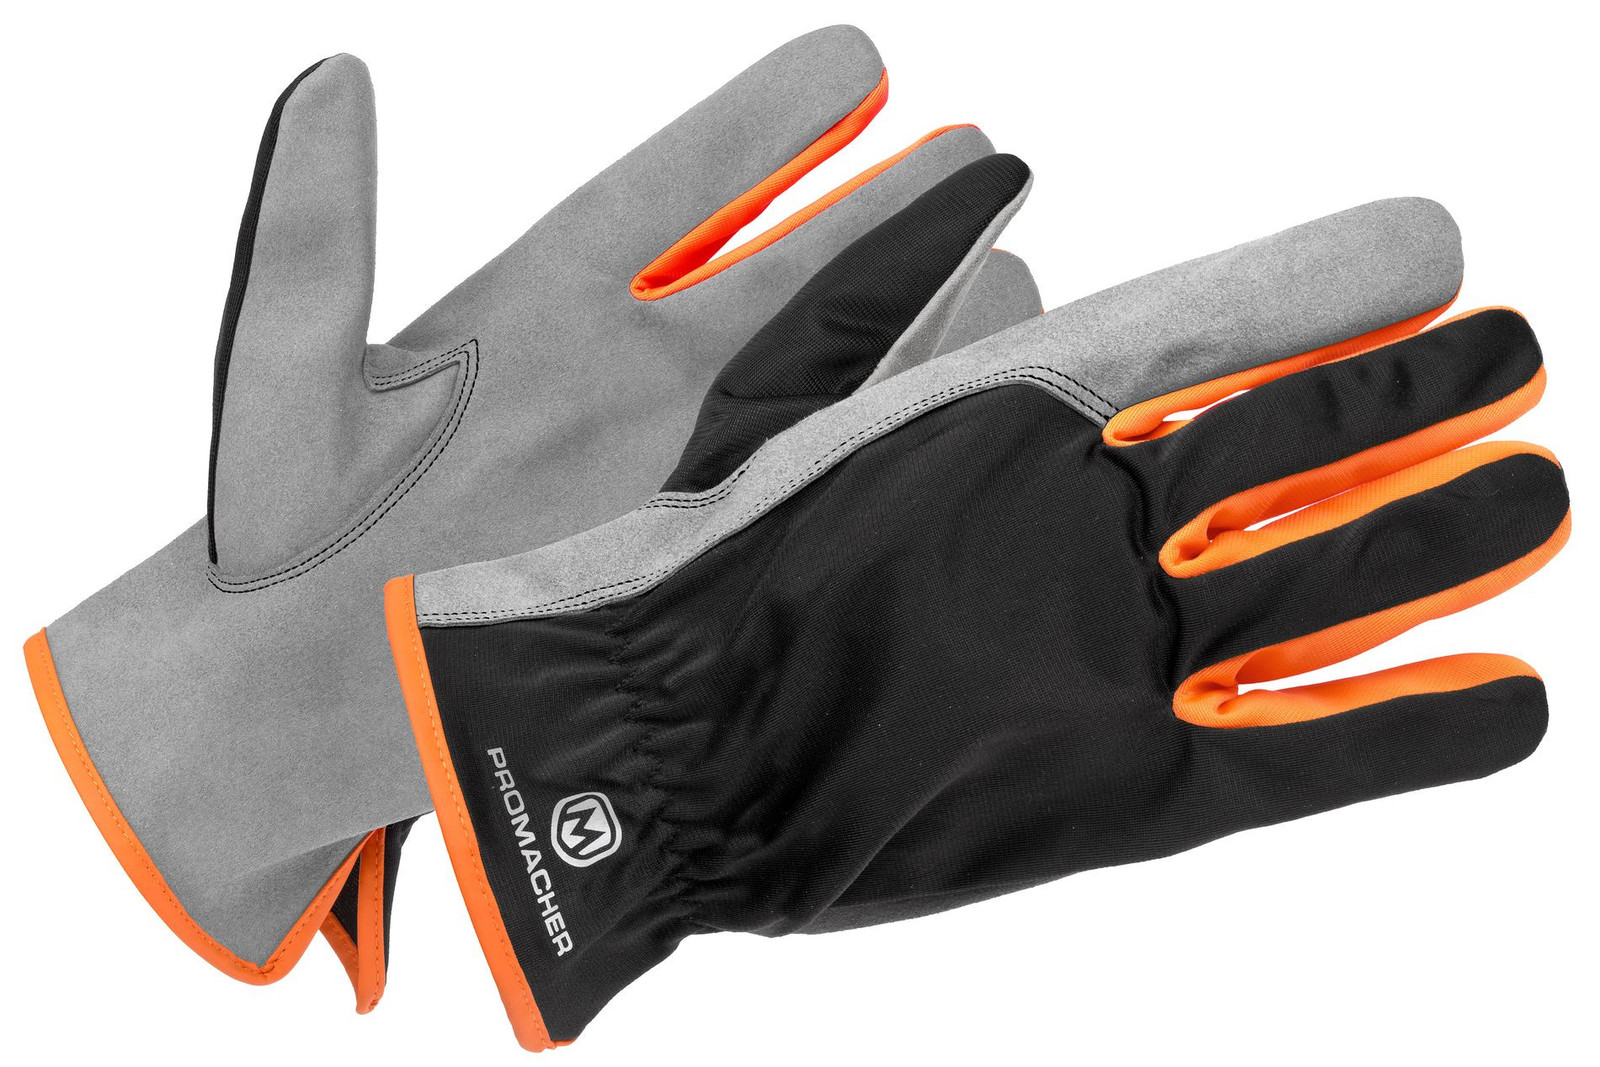 Pracovné rukavice Promacher Carpos kombinované - veľkosť: 11/XXL, farba: svetlo sivá/ oranžová